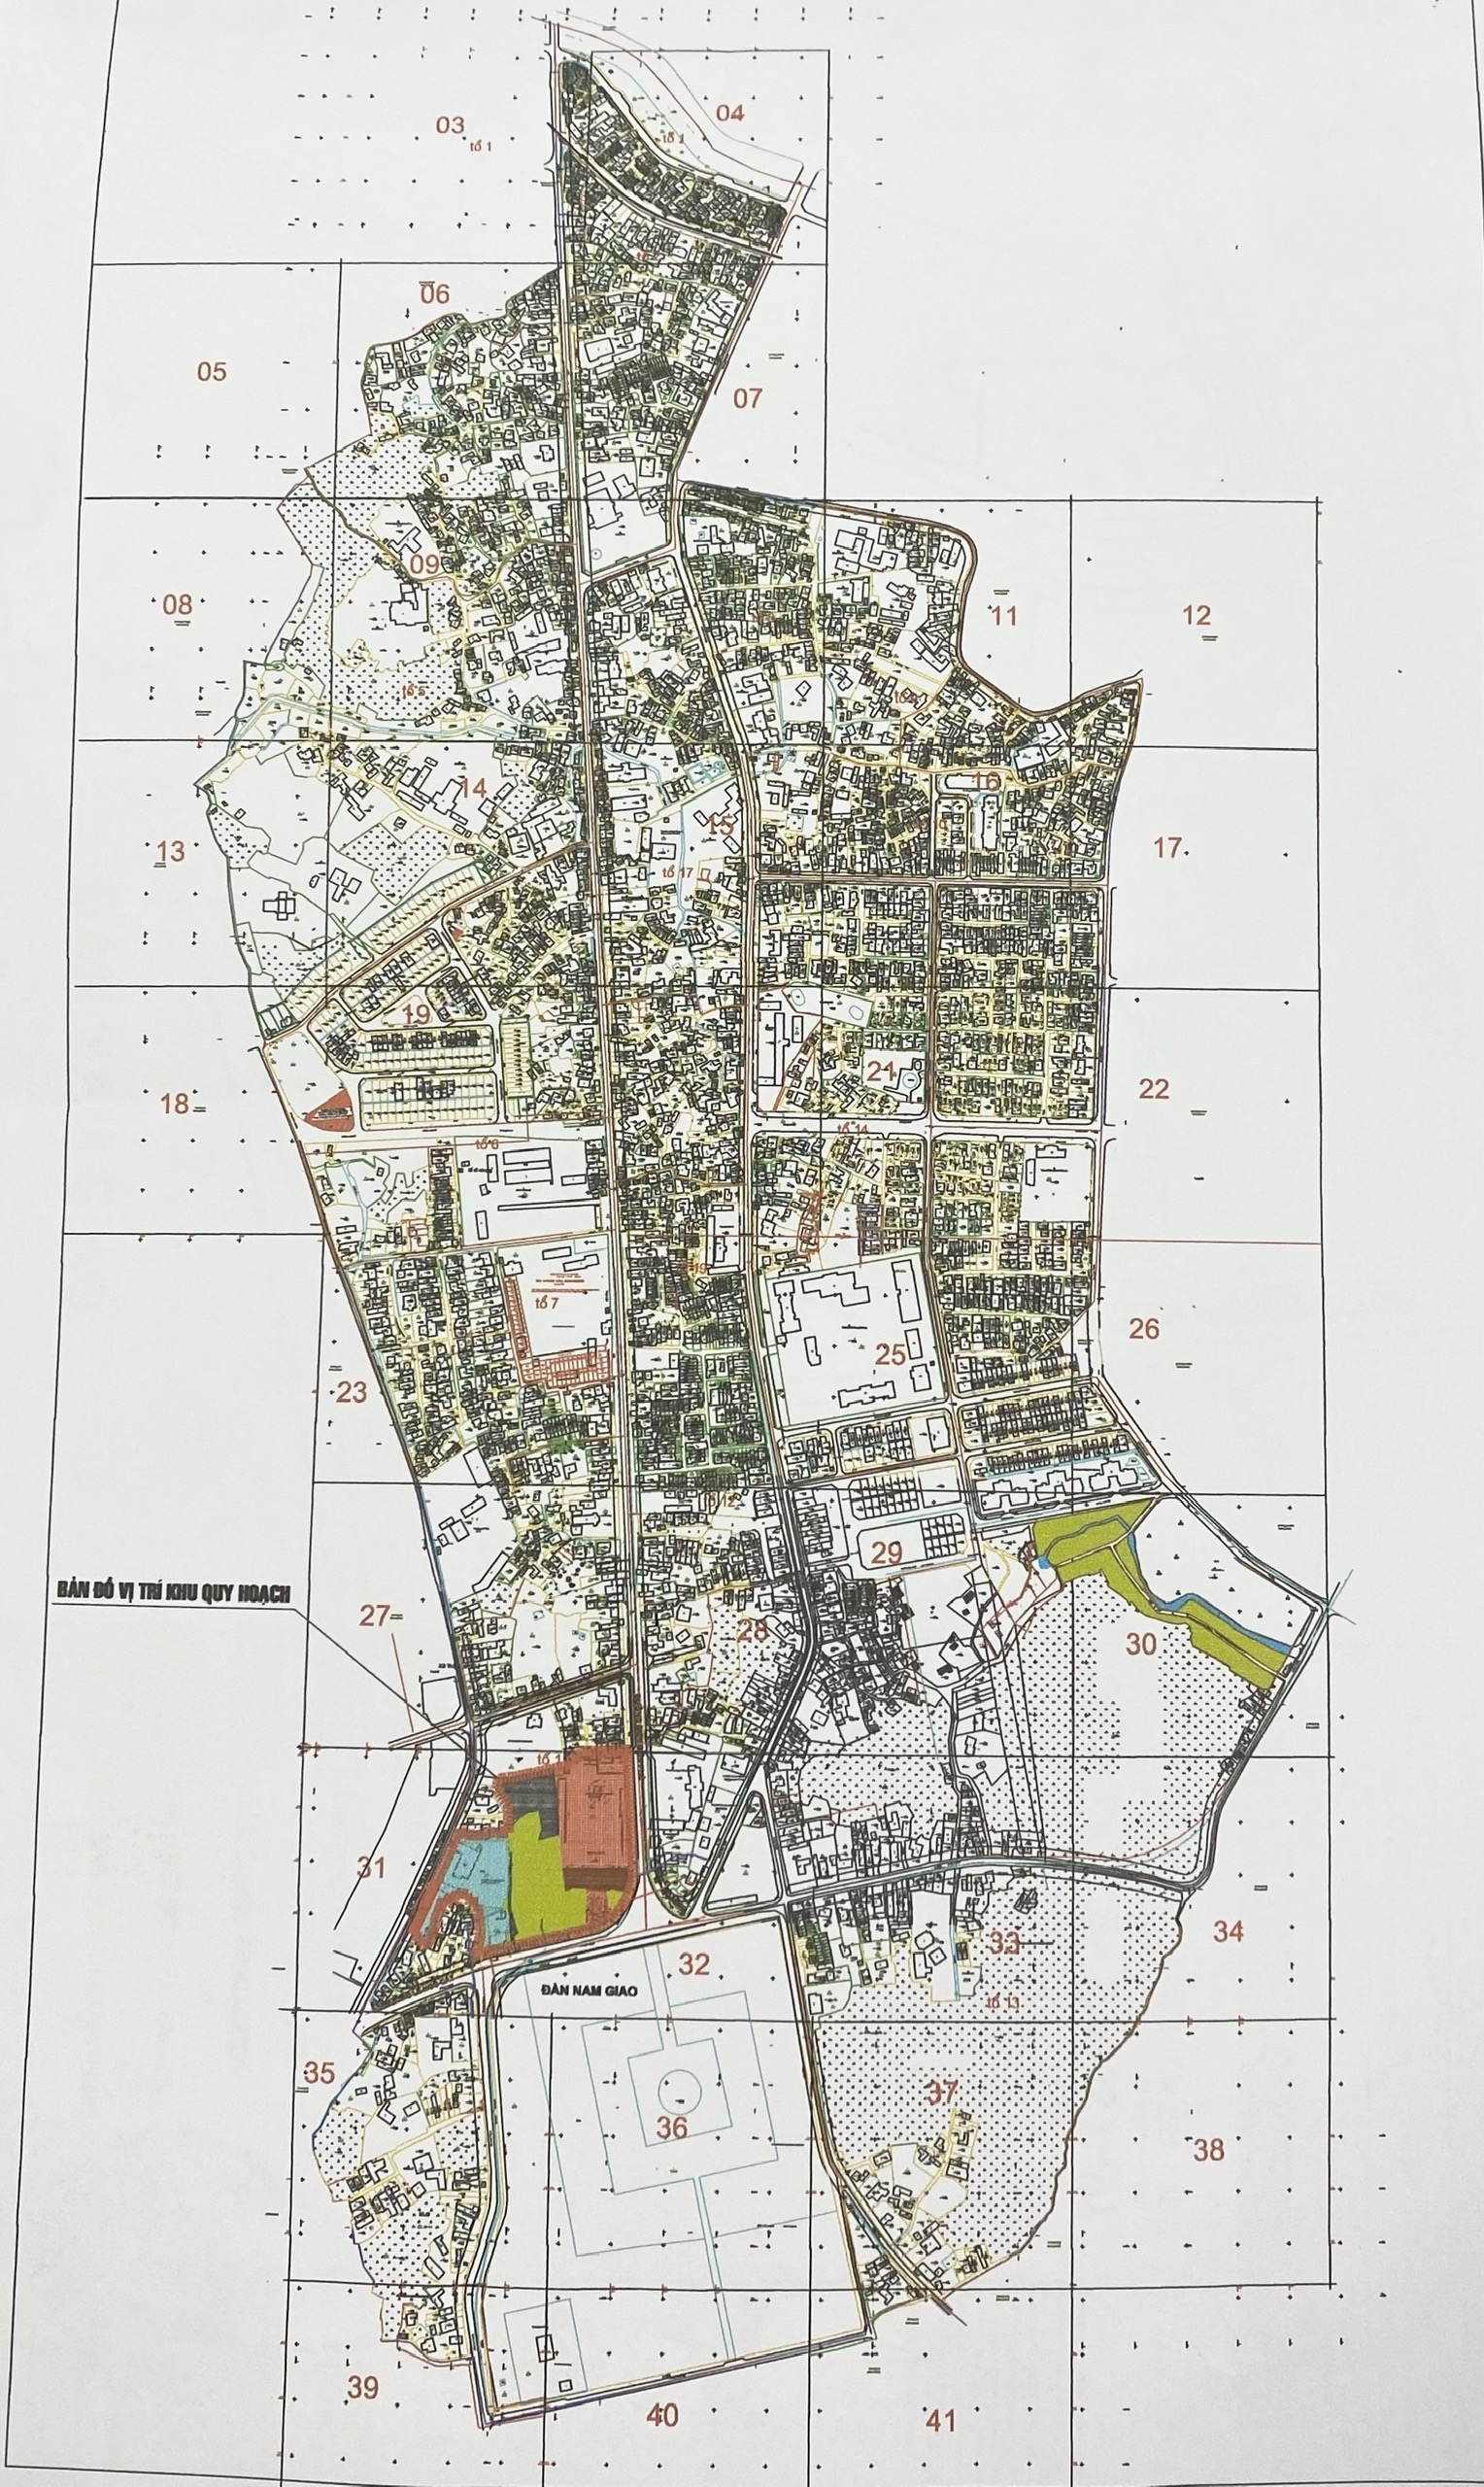 Bản đồ phường Trường An Huế 2024: Khám phá bản đồ mới nhất của phường Trường An tại thành phố Huế năm 2024 để tìm hiểu về các khu vực phát triển và tiện ích mới nhất. Từ các khu dân cư hiện đại đến các công trình cộng đồng đầy sức sống, thực sự đây là thời điểm tuyệt vời để khám phá phía đông thành phố Huế.